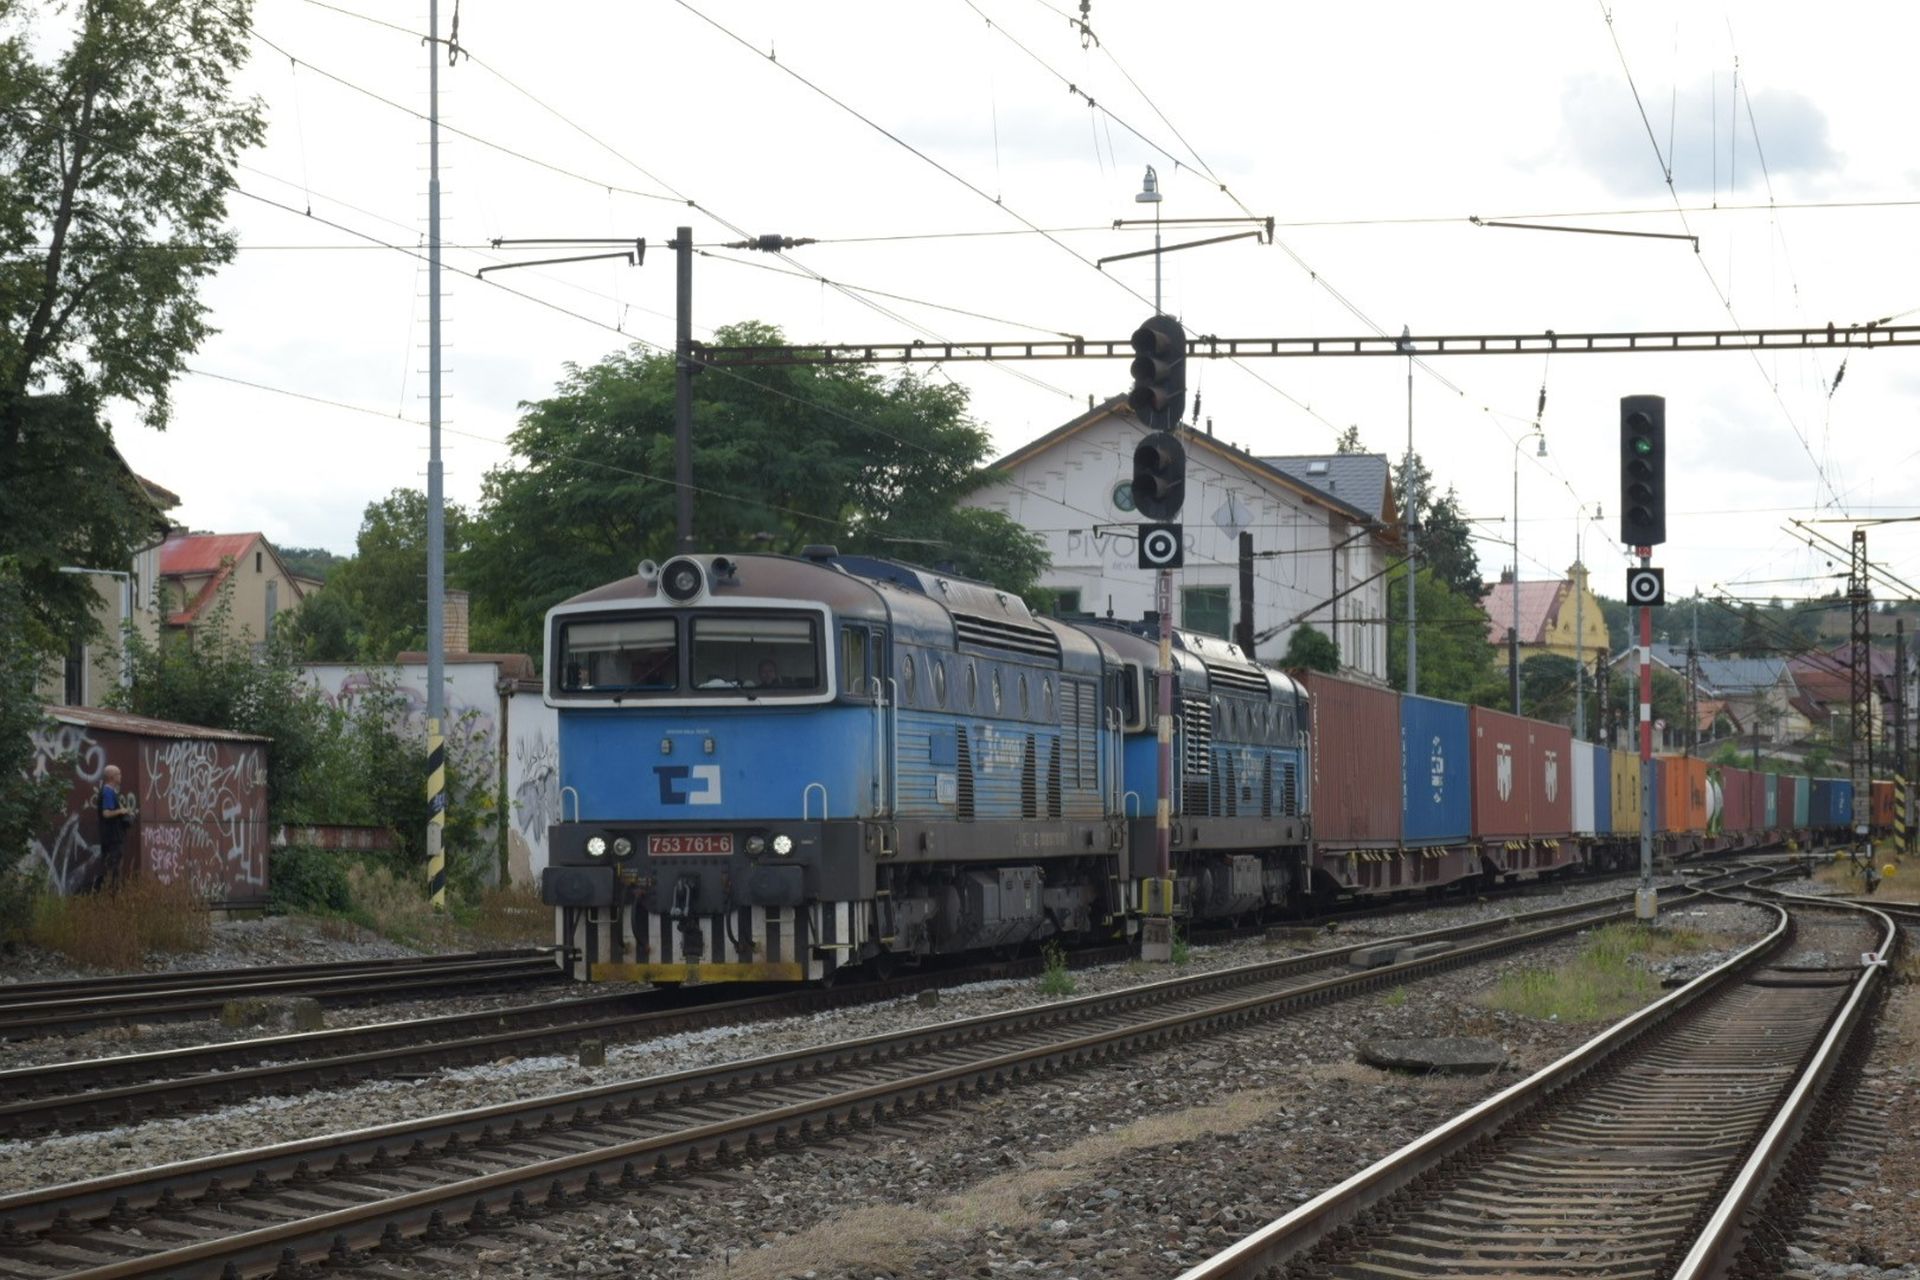 Nákladní dopravci nasadili na trať 171 mezi Prahou a Berounem dieselové lokomotivy. Foto: ŽESNAD.cz